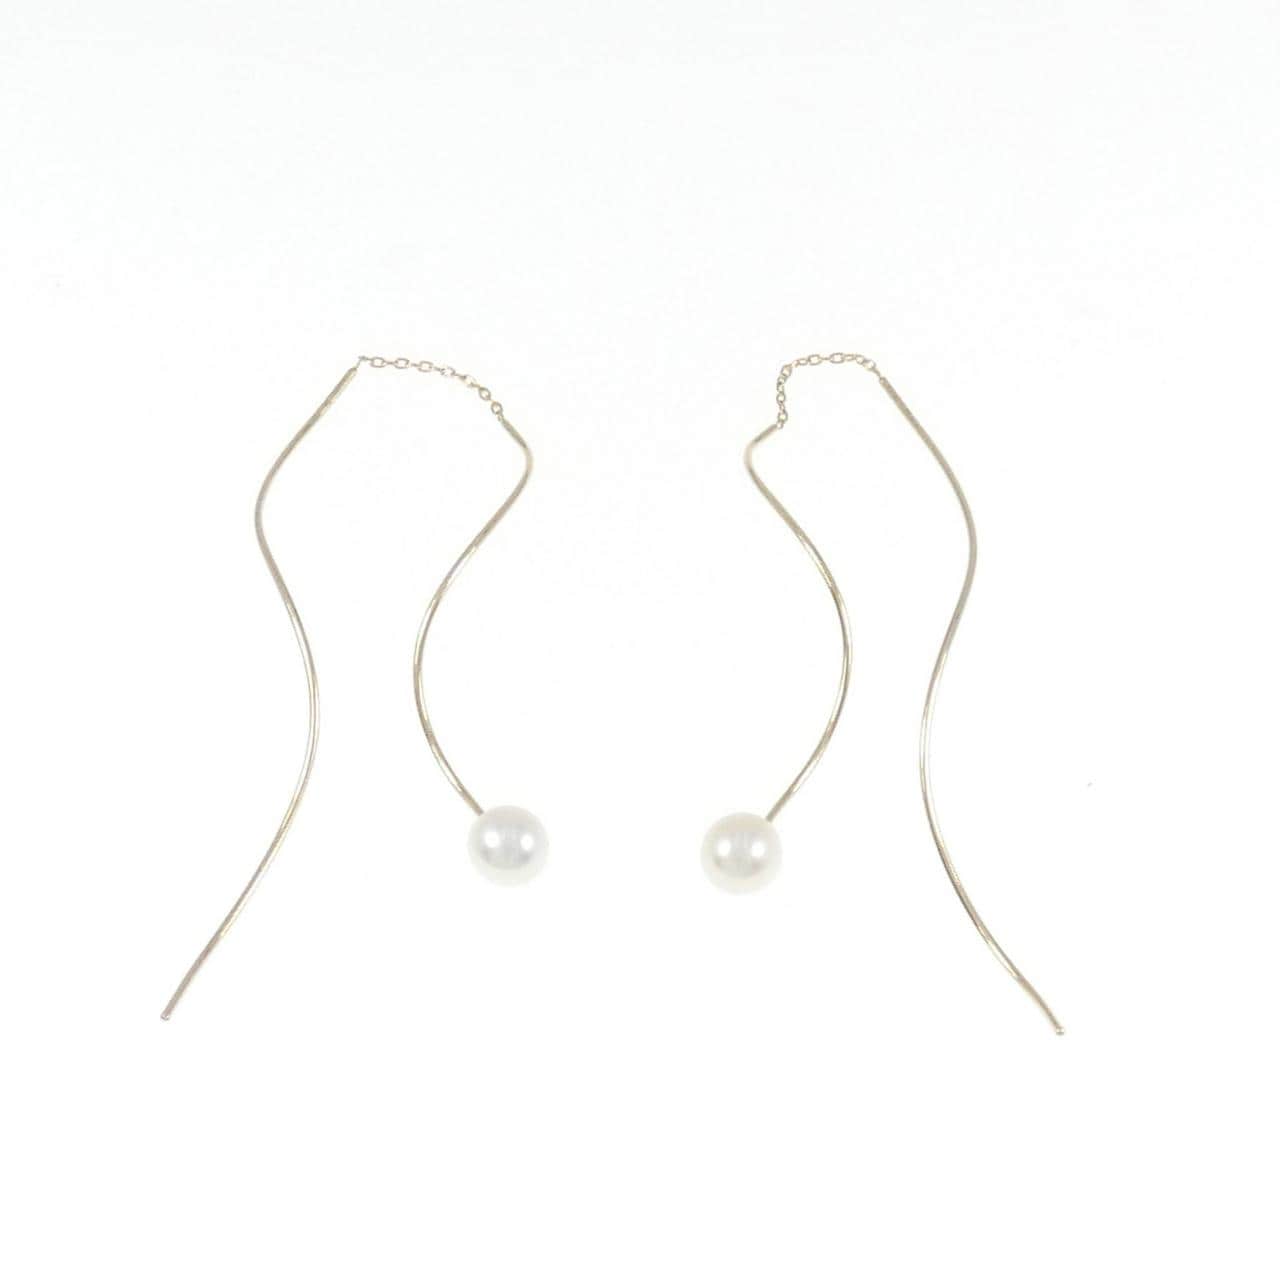 Tasaki freshwater pearl earrings 5.8mm